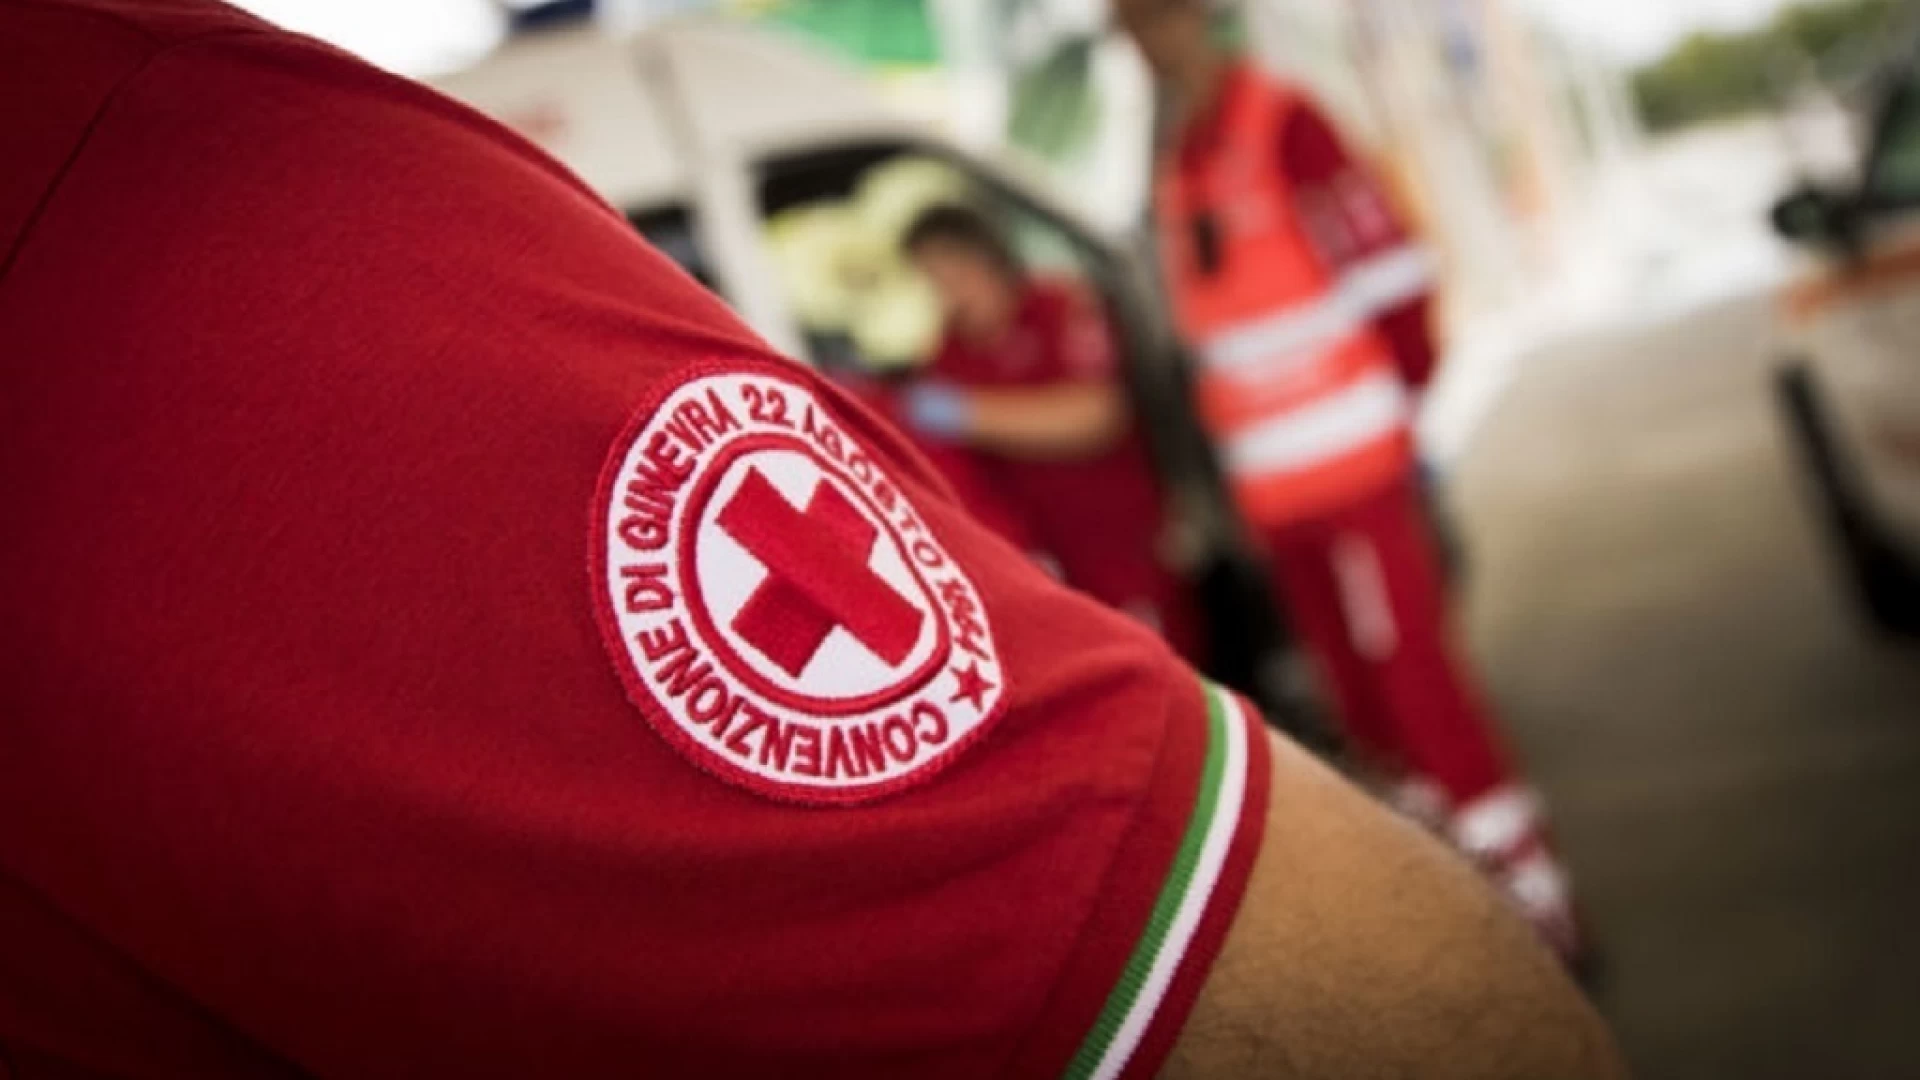 Croce Rossa, ad Isernia la Giornata di prevenzione nefrologica.